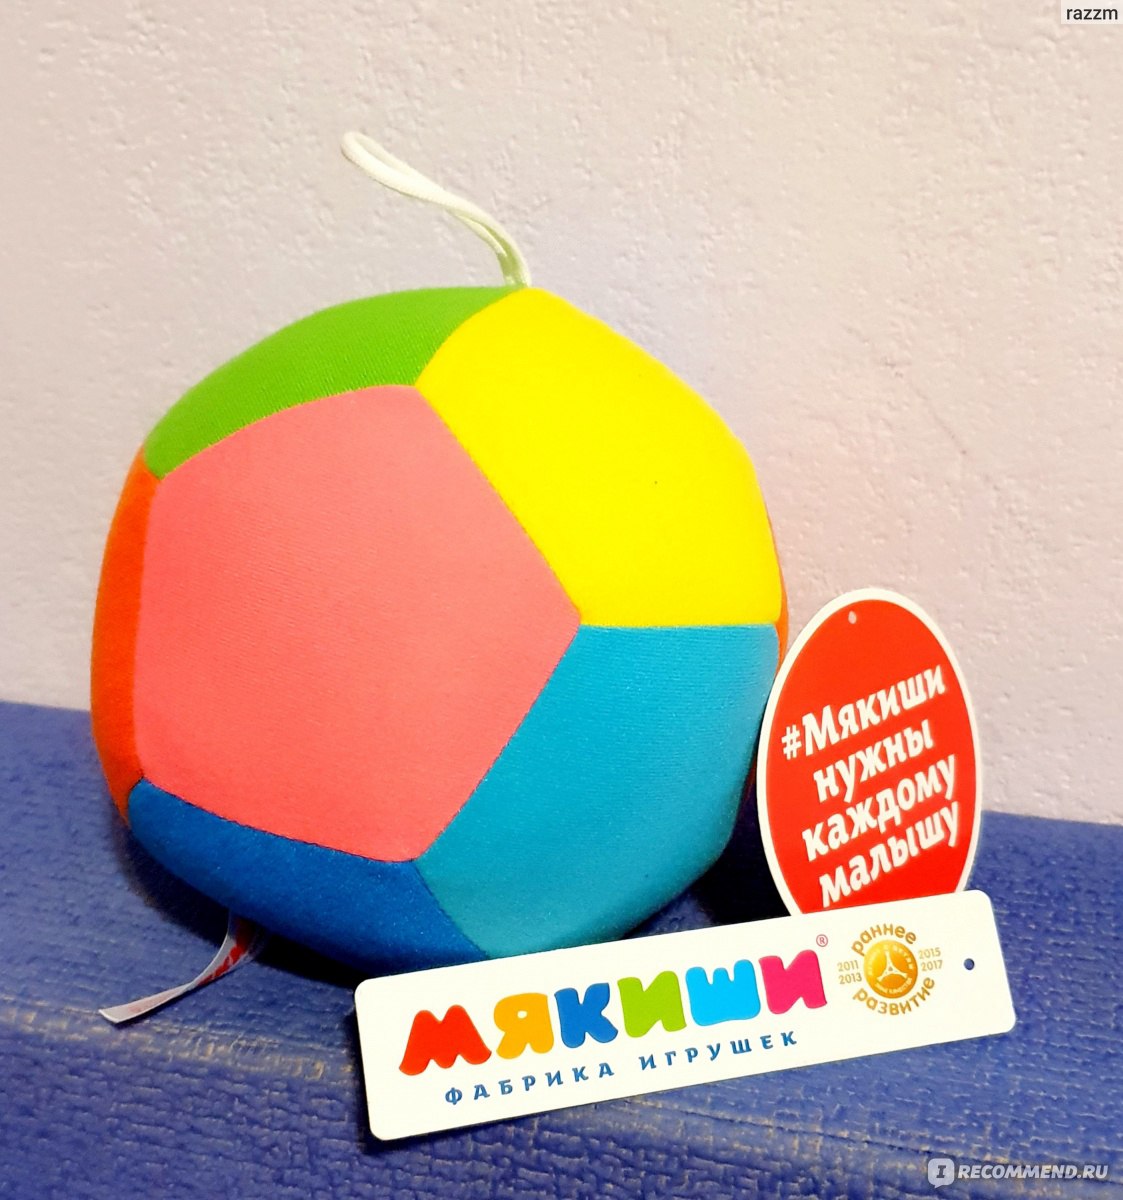 Купить мячики с погремушкой оптом — Интернет-магазин игрушек «Мякиши»